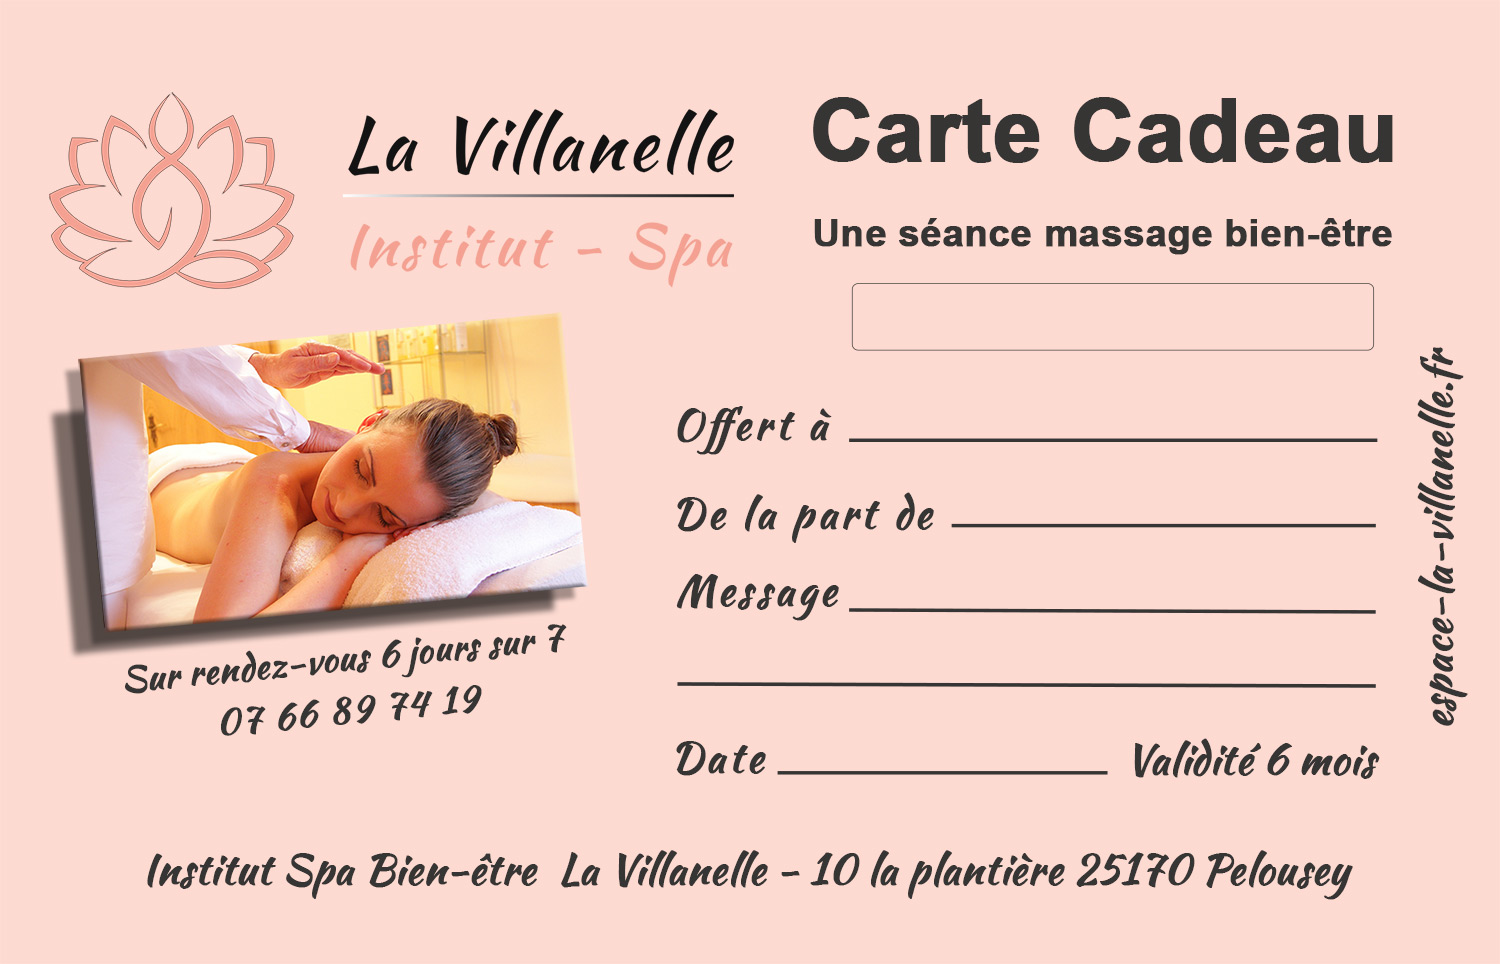 Carte Cadeau Institut Spa Bien-Etre Besançon La Villanelle